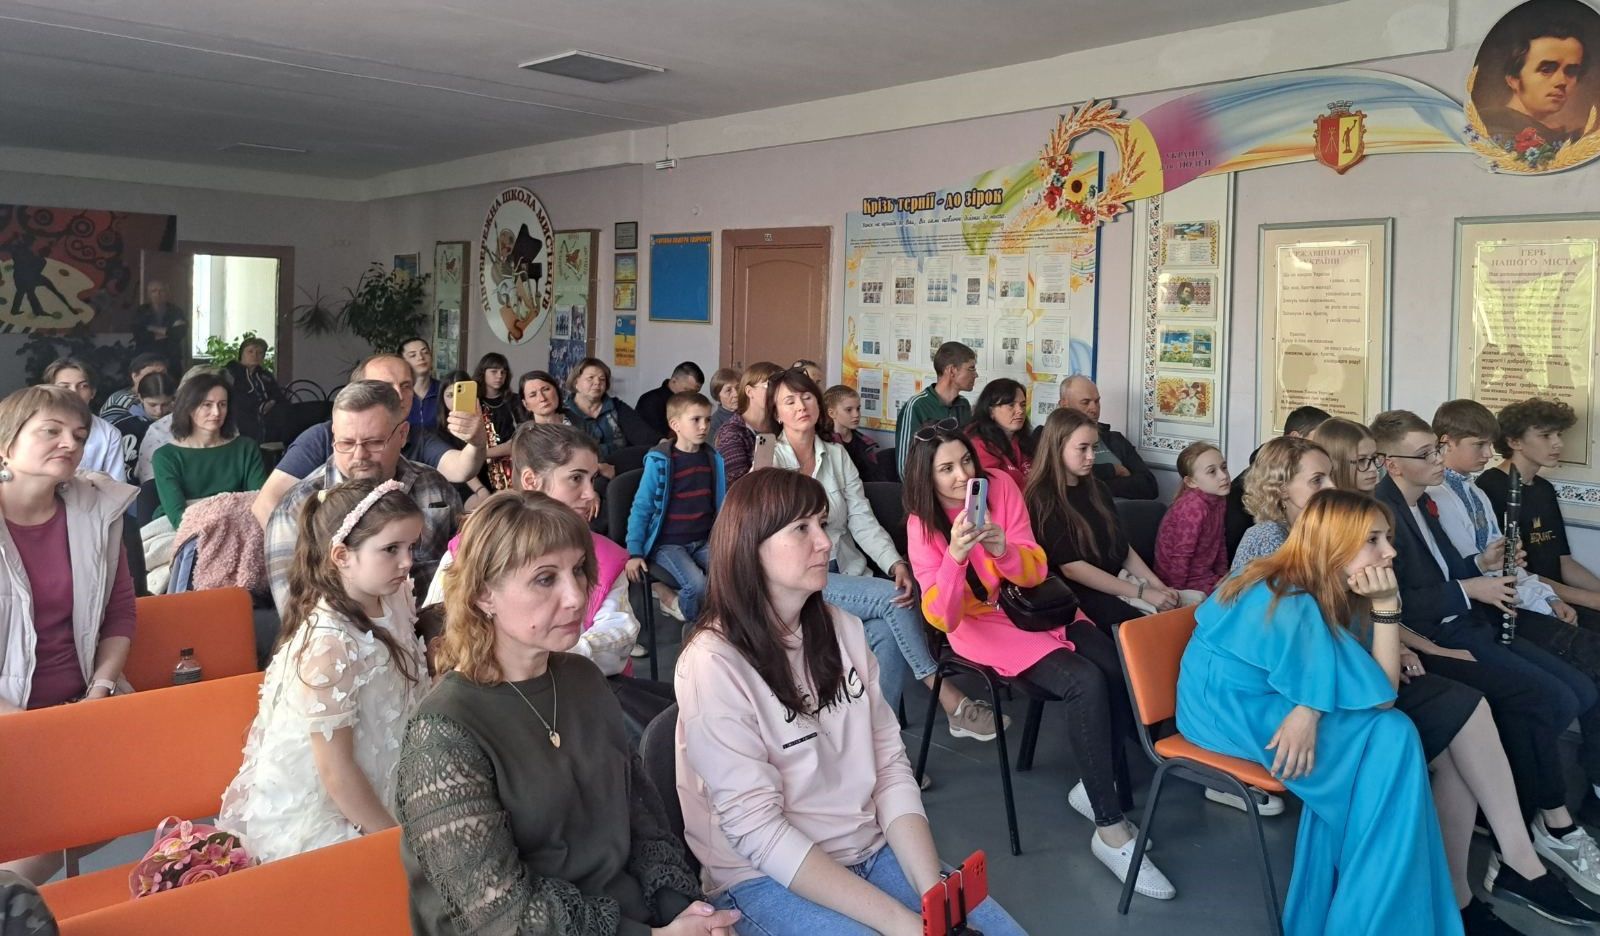 Ученики Левобережной школы искусств Каменского выступили с ярким концертом